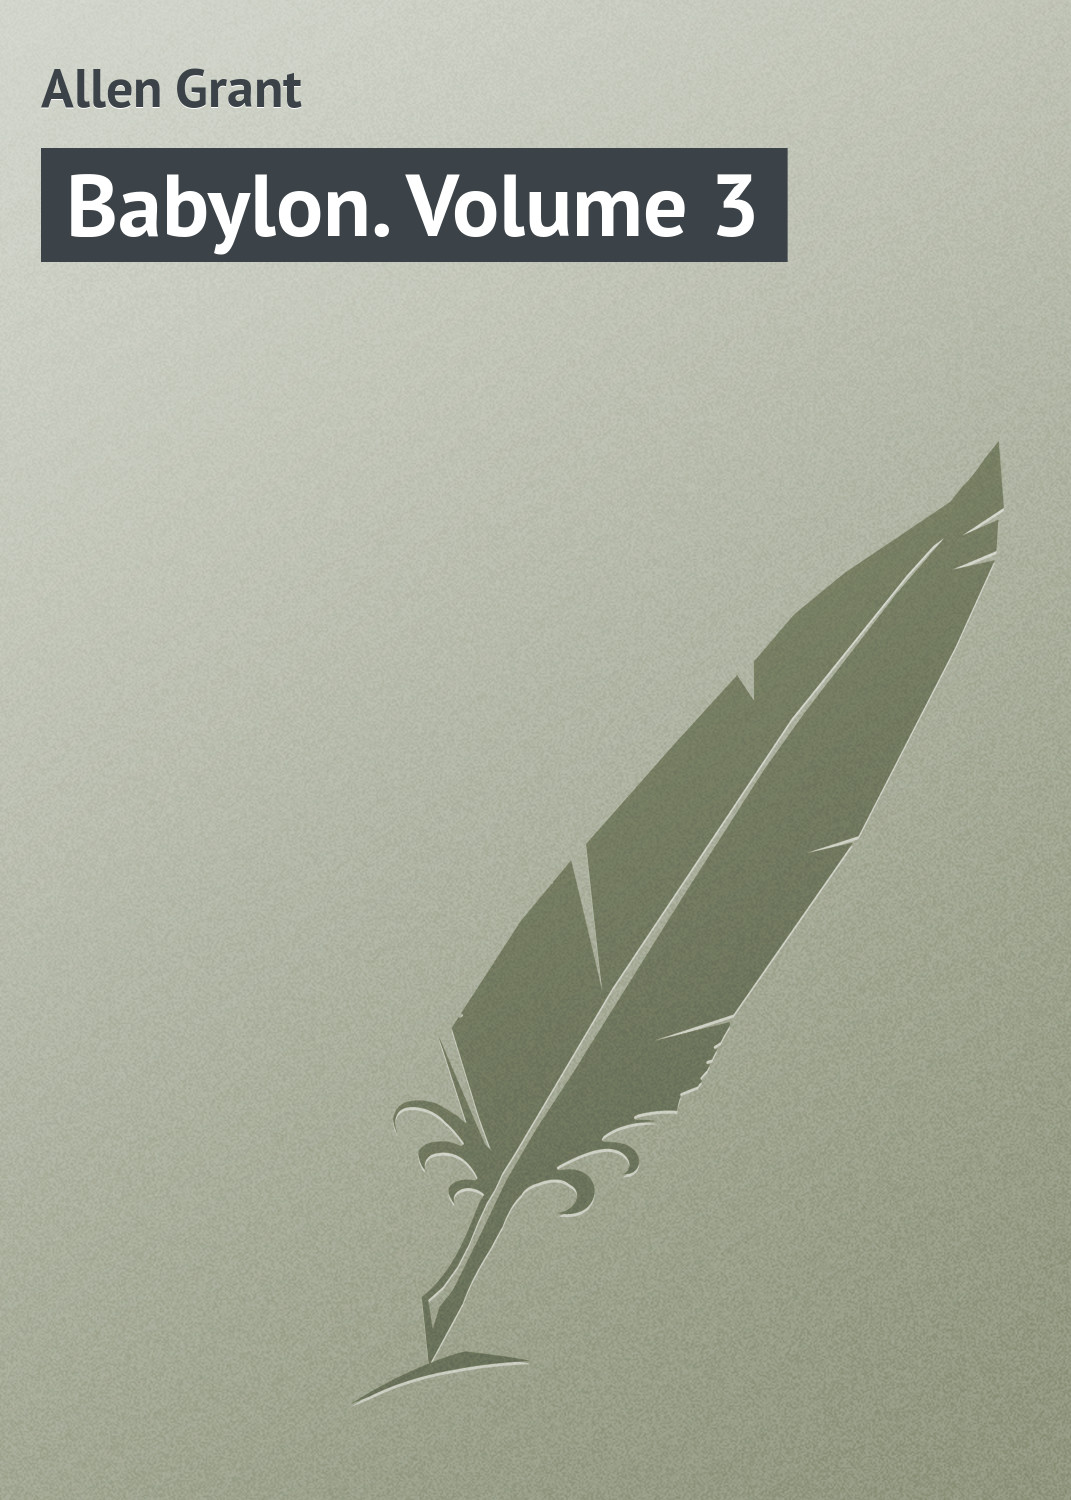 Книга Babylon. Volume 3 из серии , созданная Grant Allen, может относится к жанру Зарубежная классика. Стоимость электронной книги Babylon. Volume 3 с идентификатором 23164771 составляет 5.99 руб.